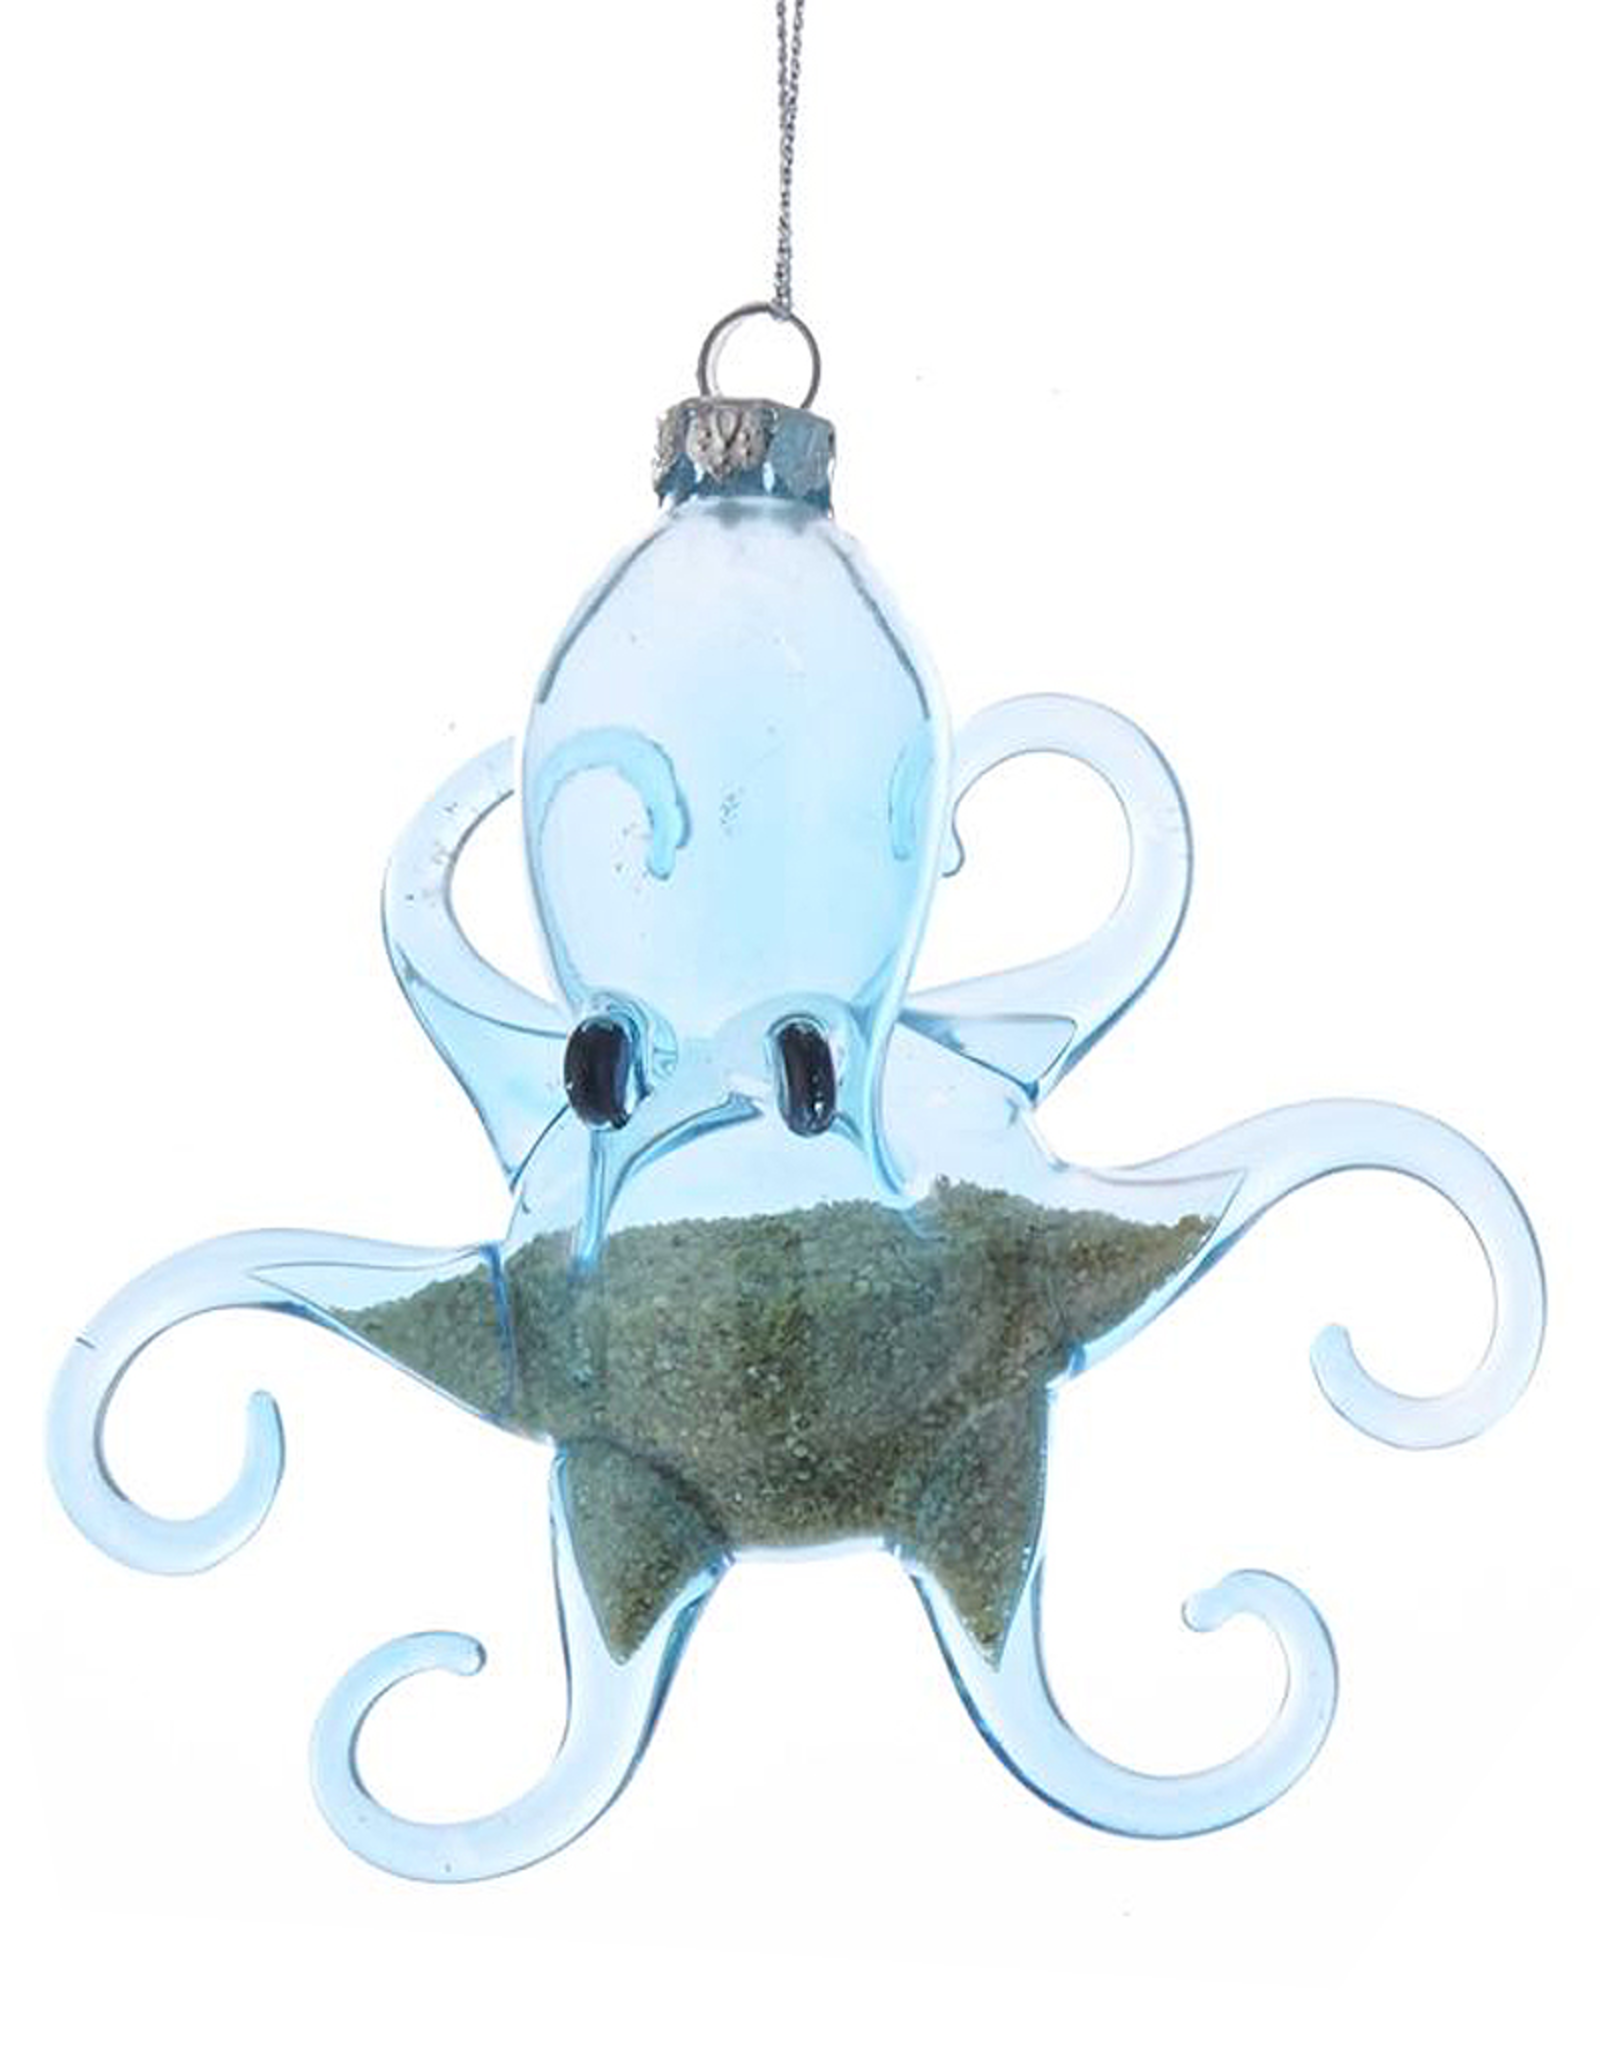 Kurt Adler Octopus Ornament Blue Glass w Beach Sand Inside - Arms Out